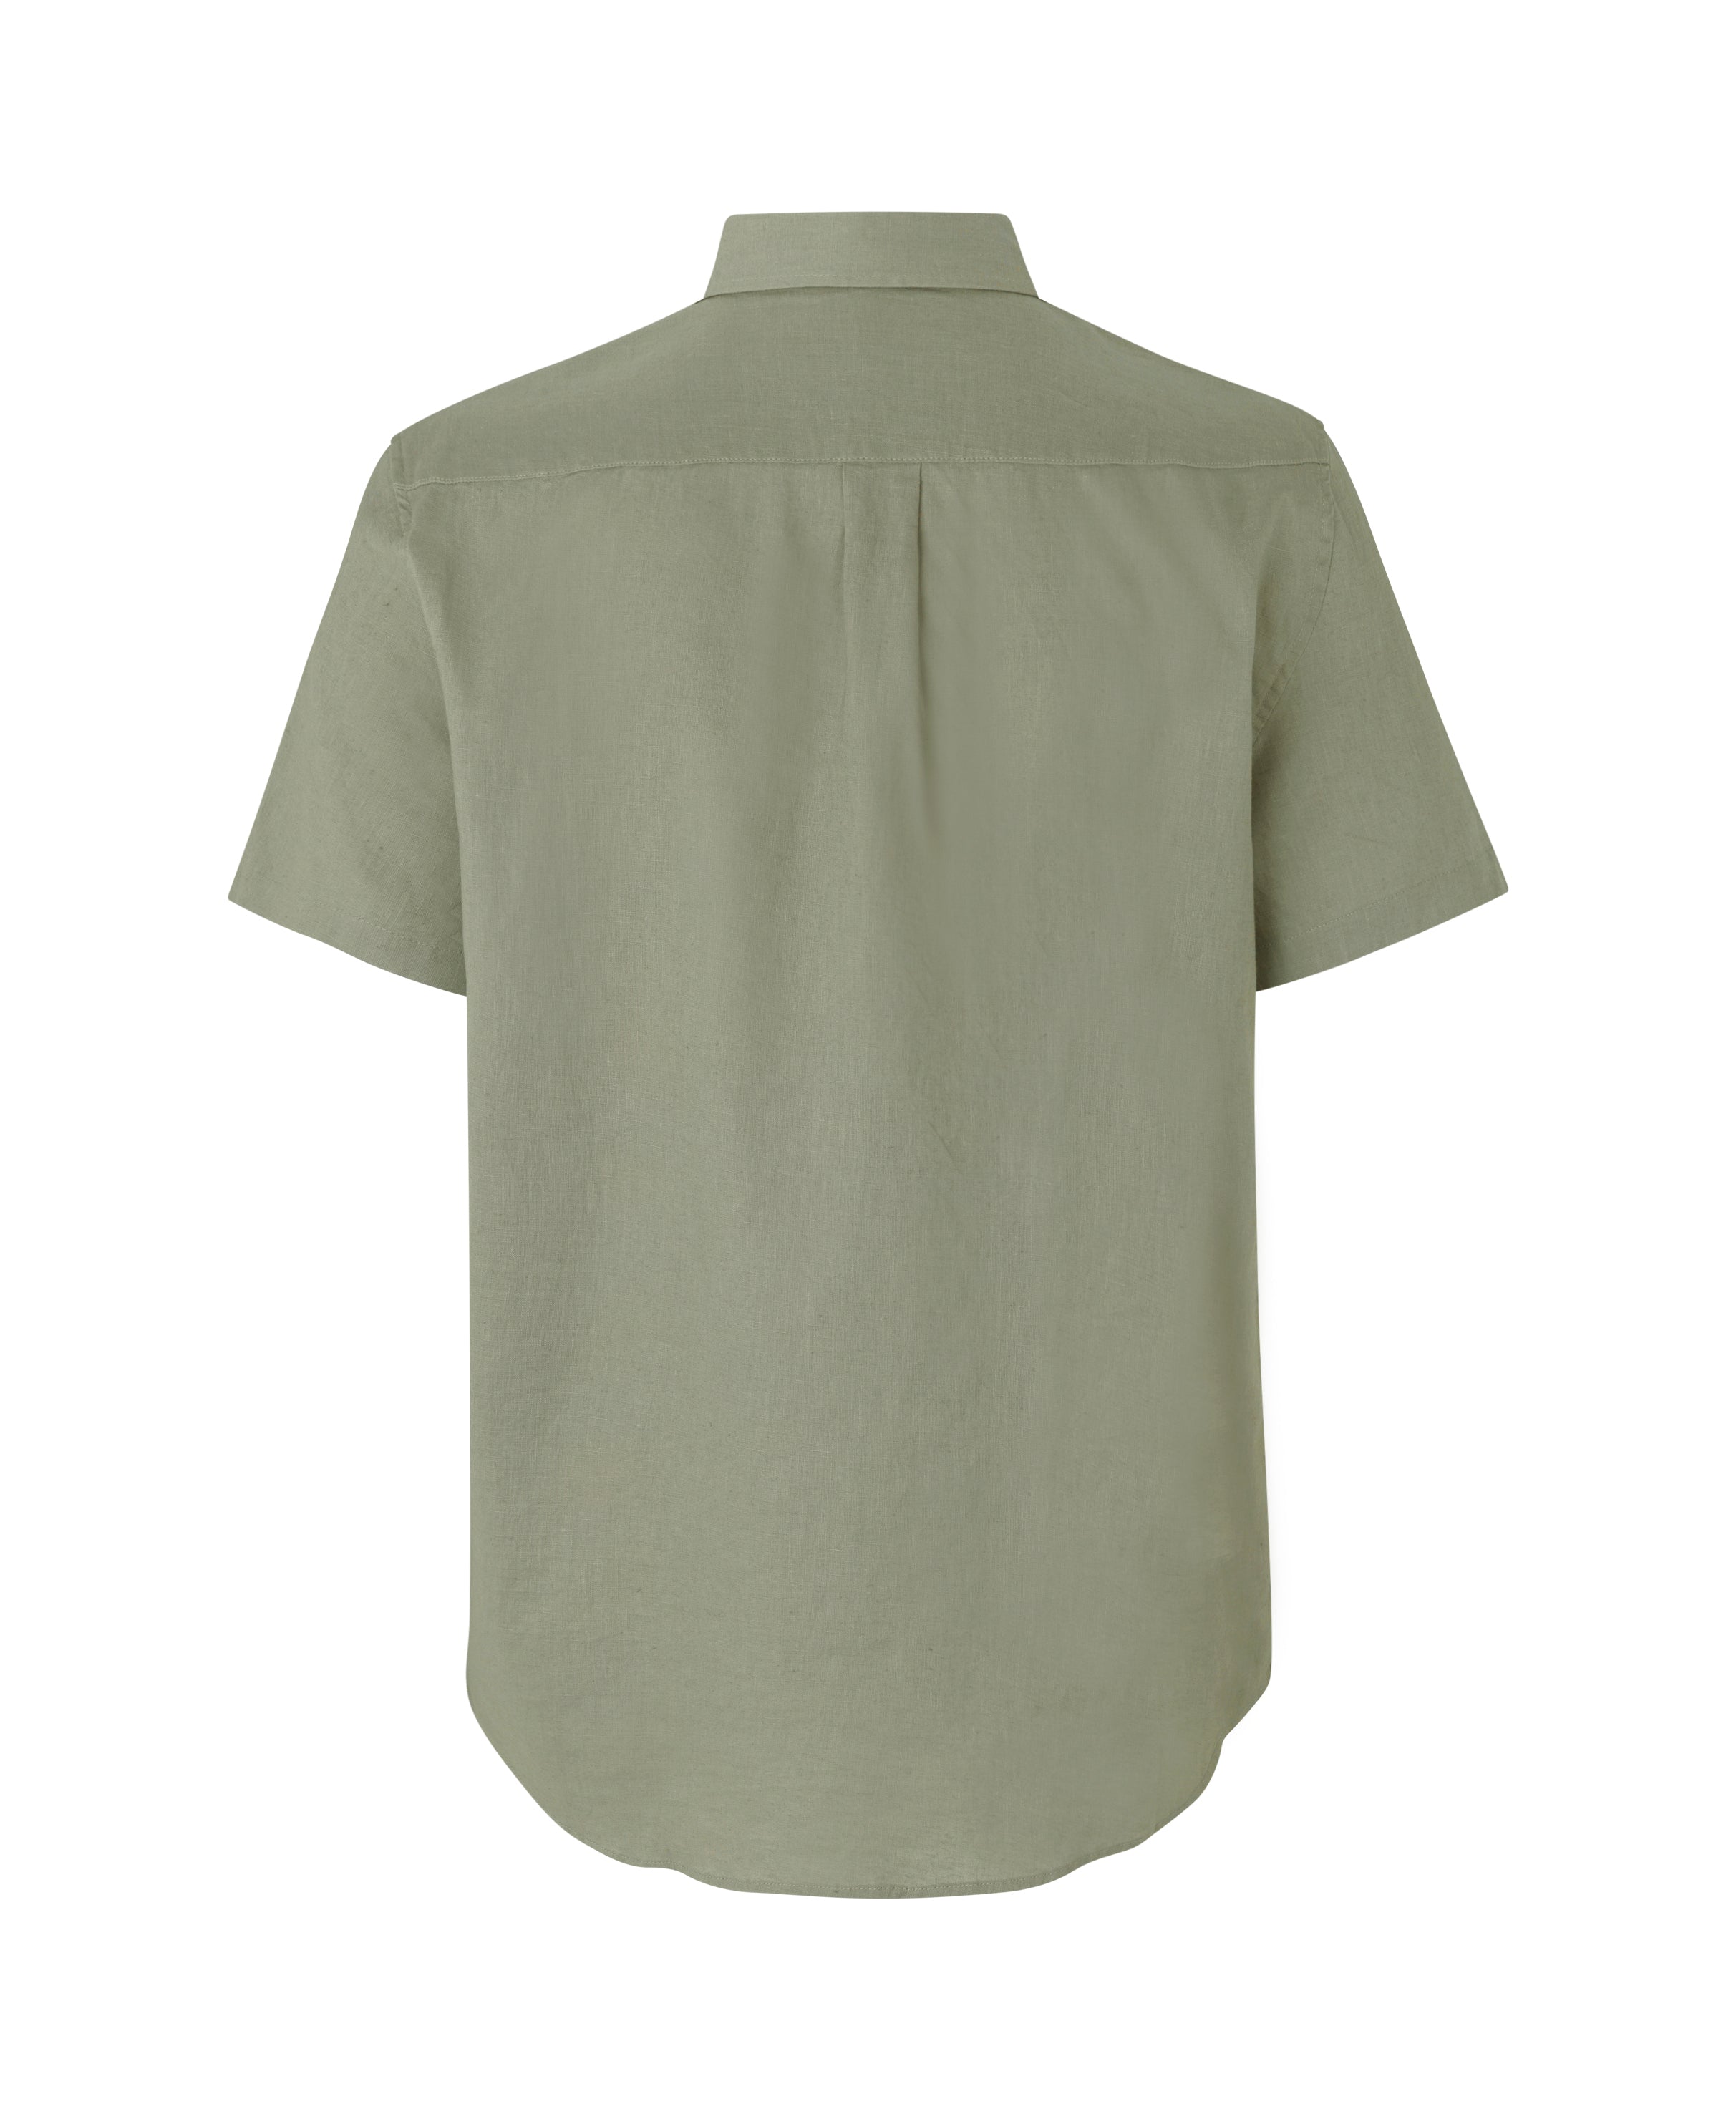 Vento BX Shirt - Seagrass